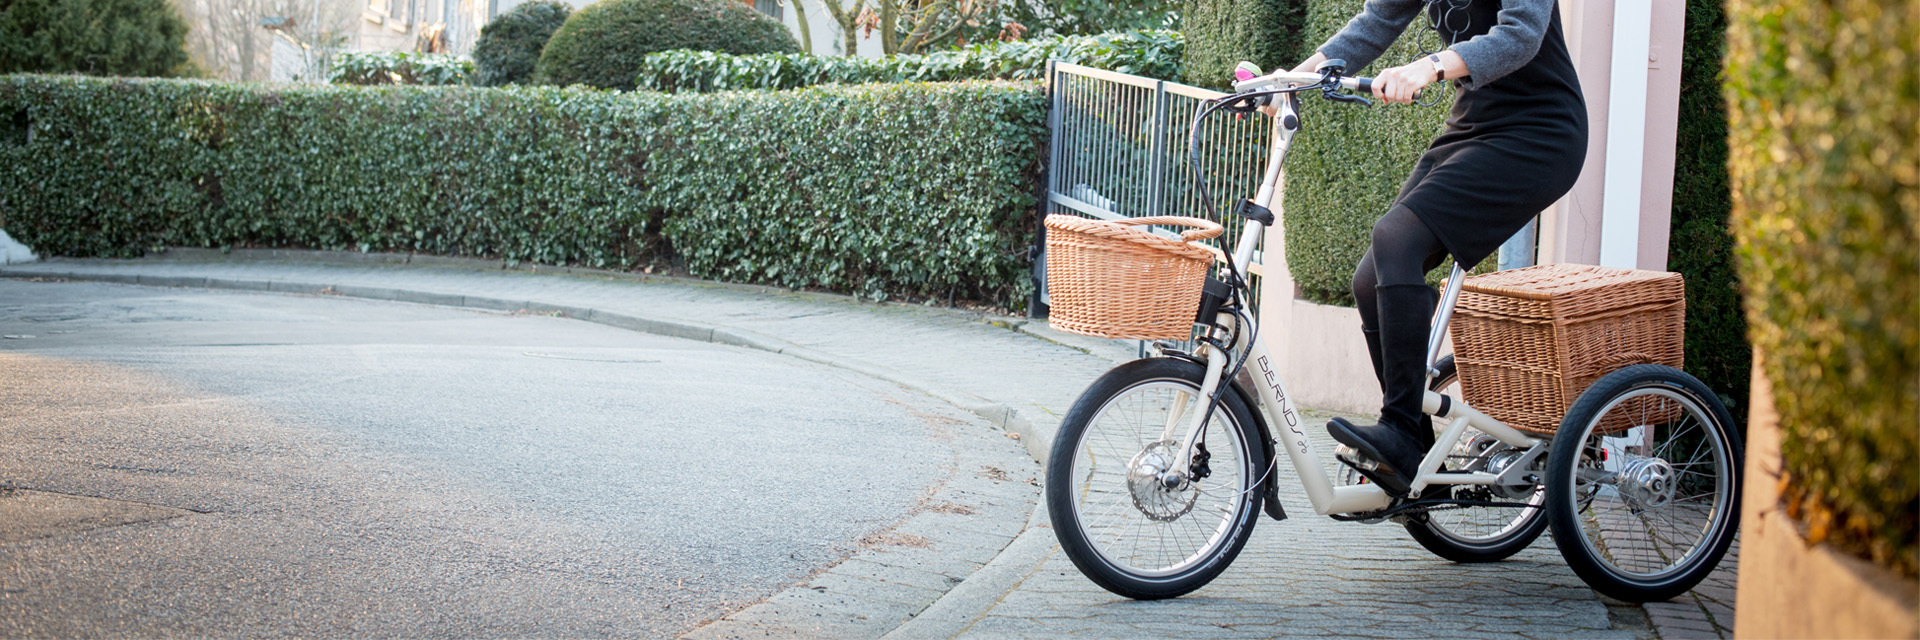 Frau auf dem Bernds Bikes Dreirad Kompakt Grete PickUp auf dem Weg aus einer Einfahrt auf die Straße vor grünen Hecken